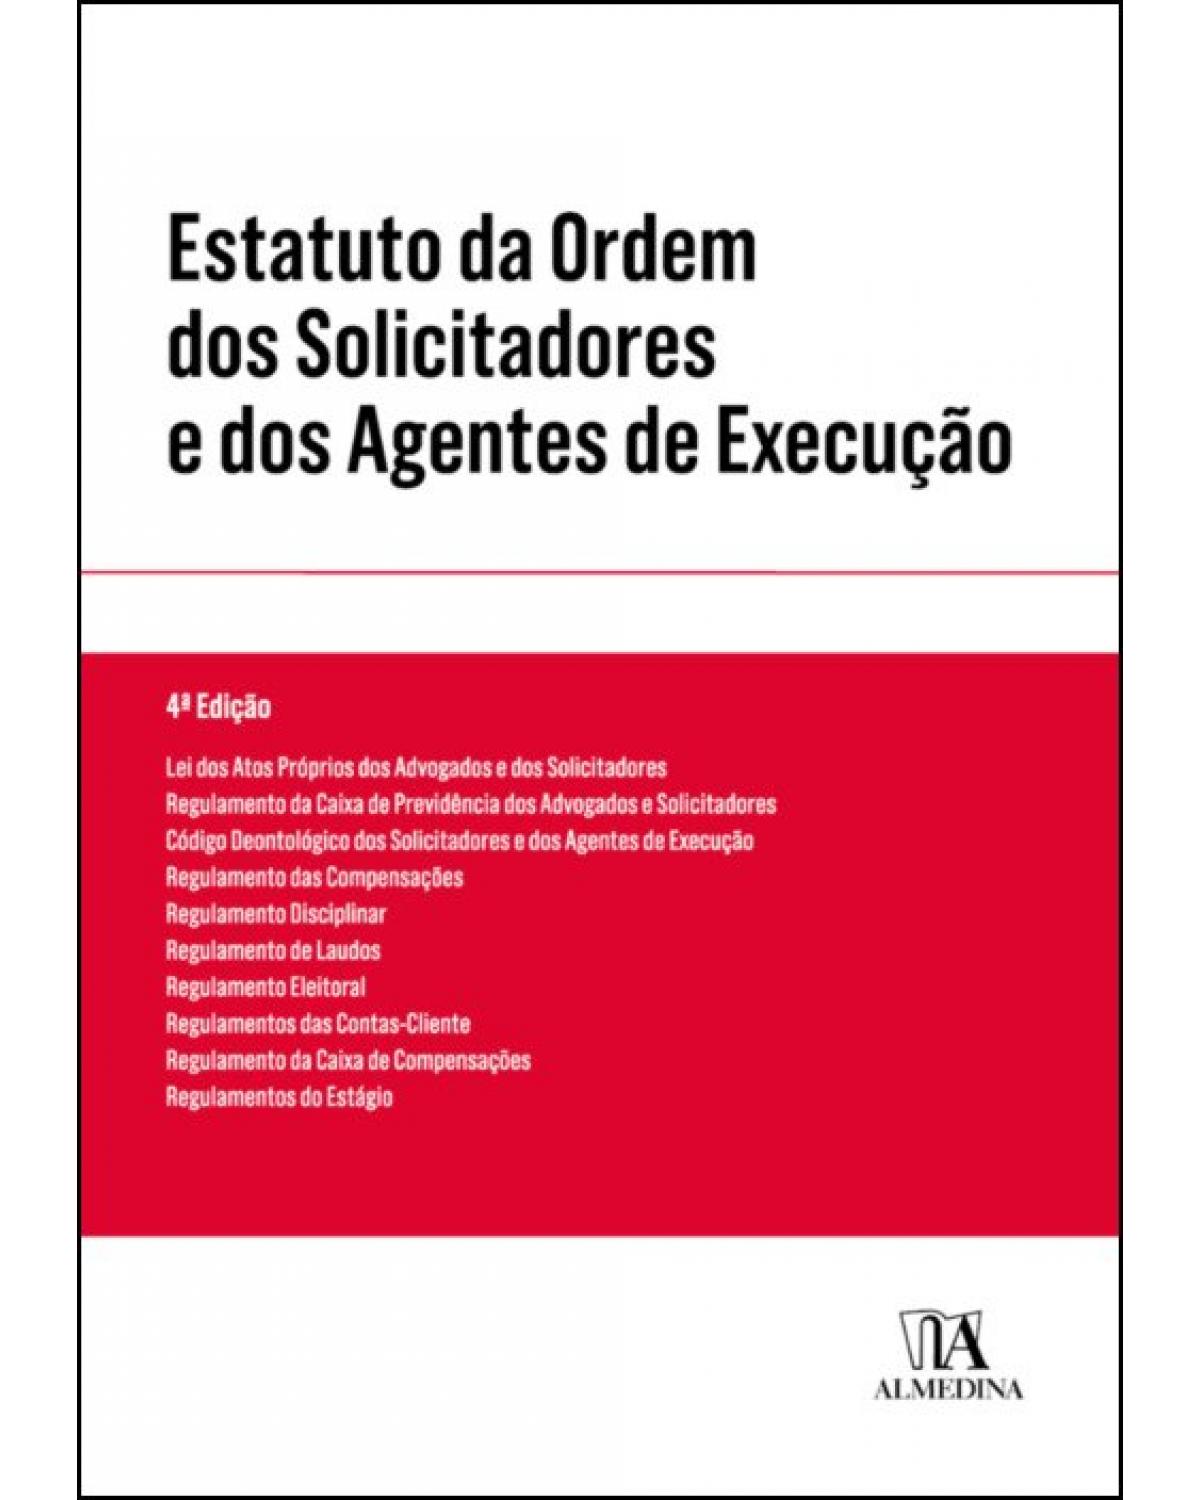 Estatuto da ordem dos solicitadores e dos agentes de execução - 4ª Edição | 2019